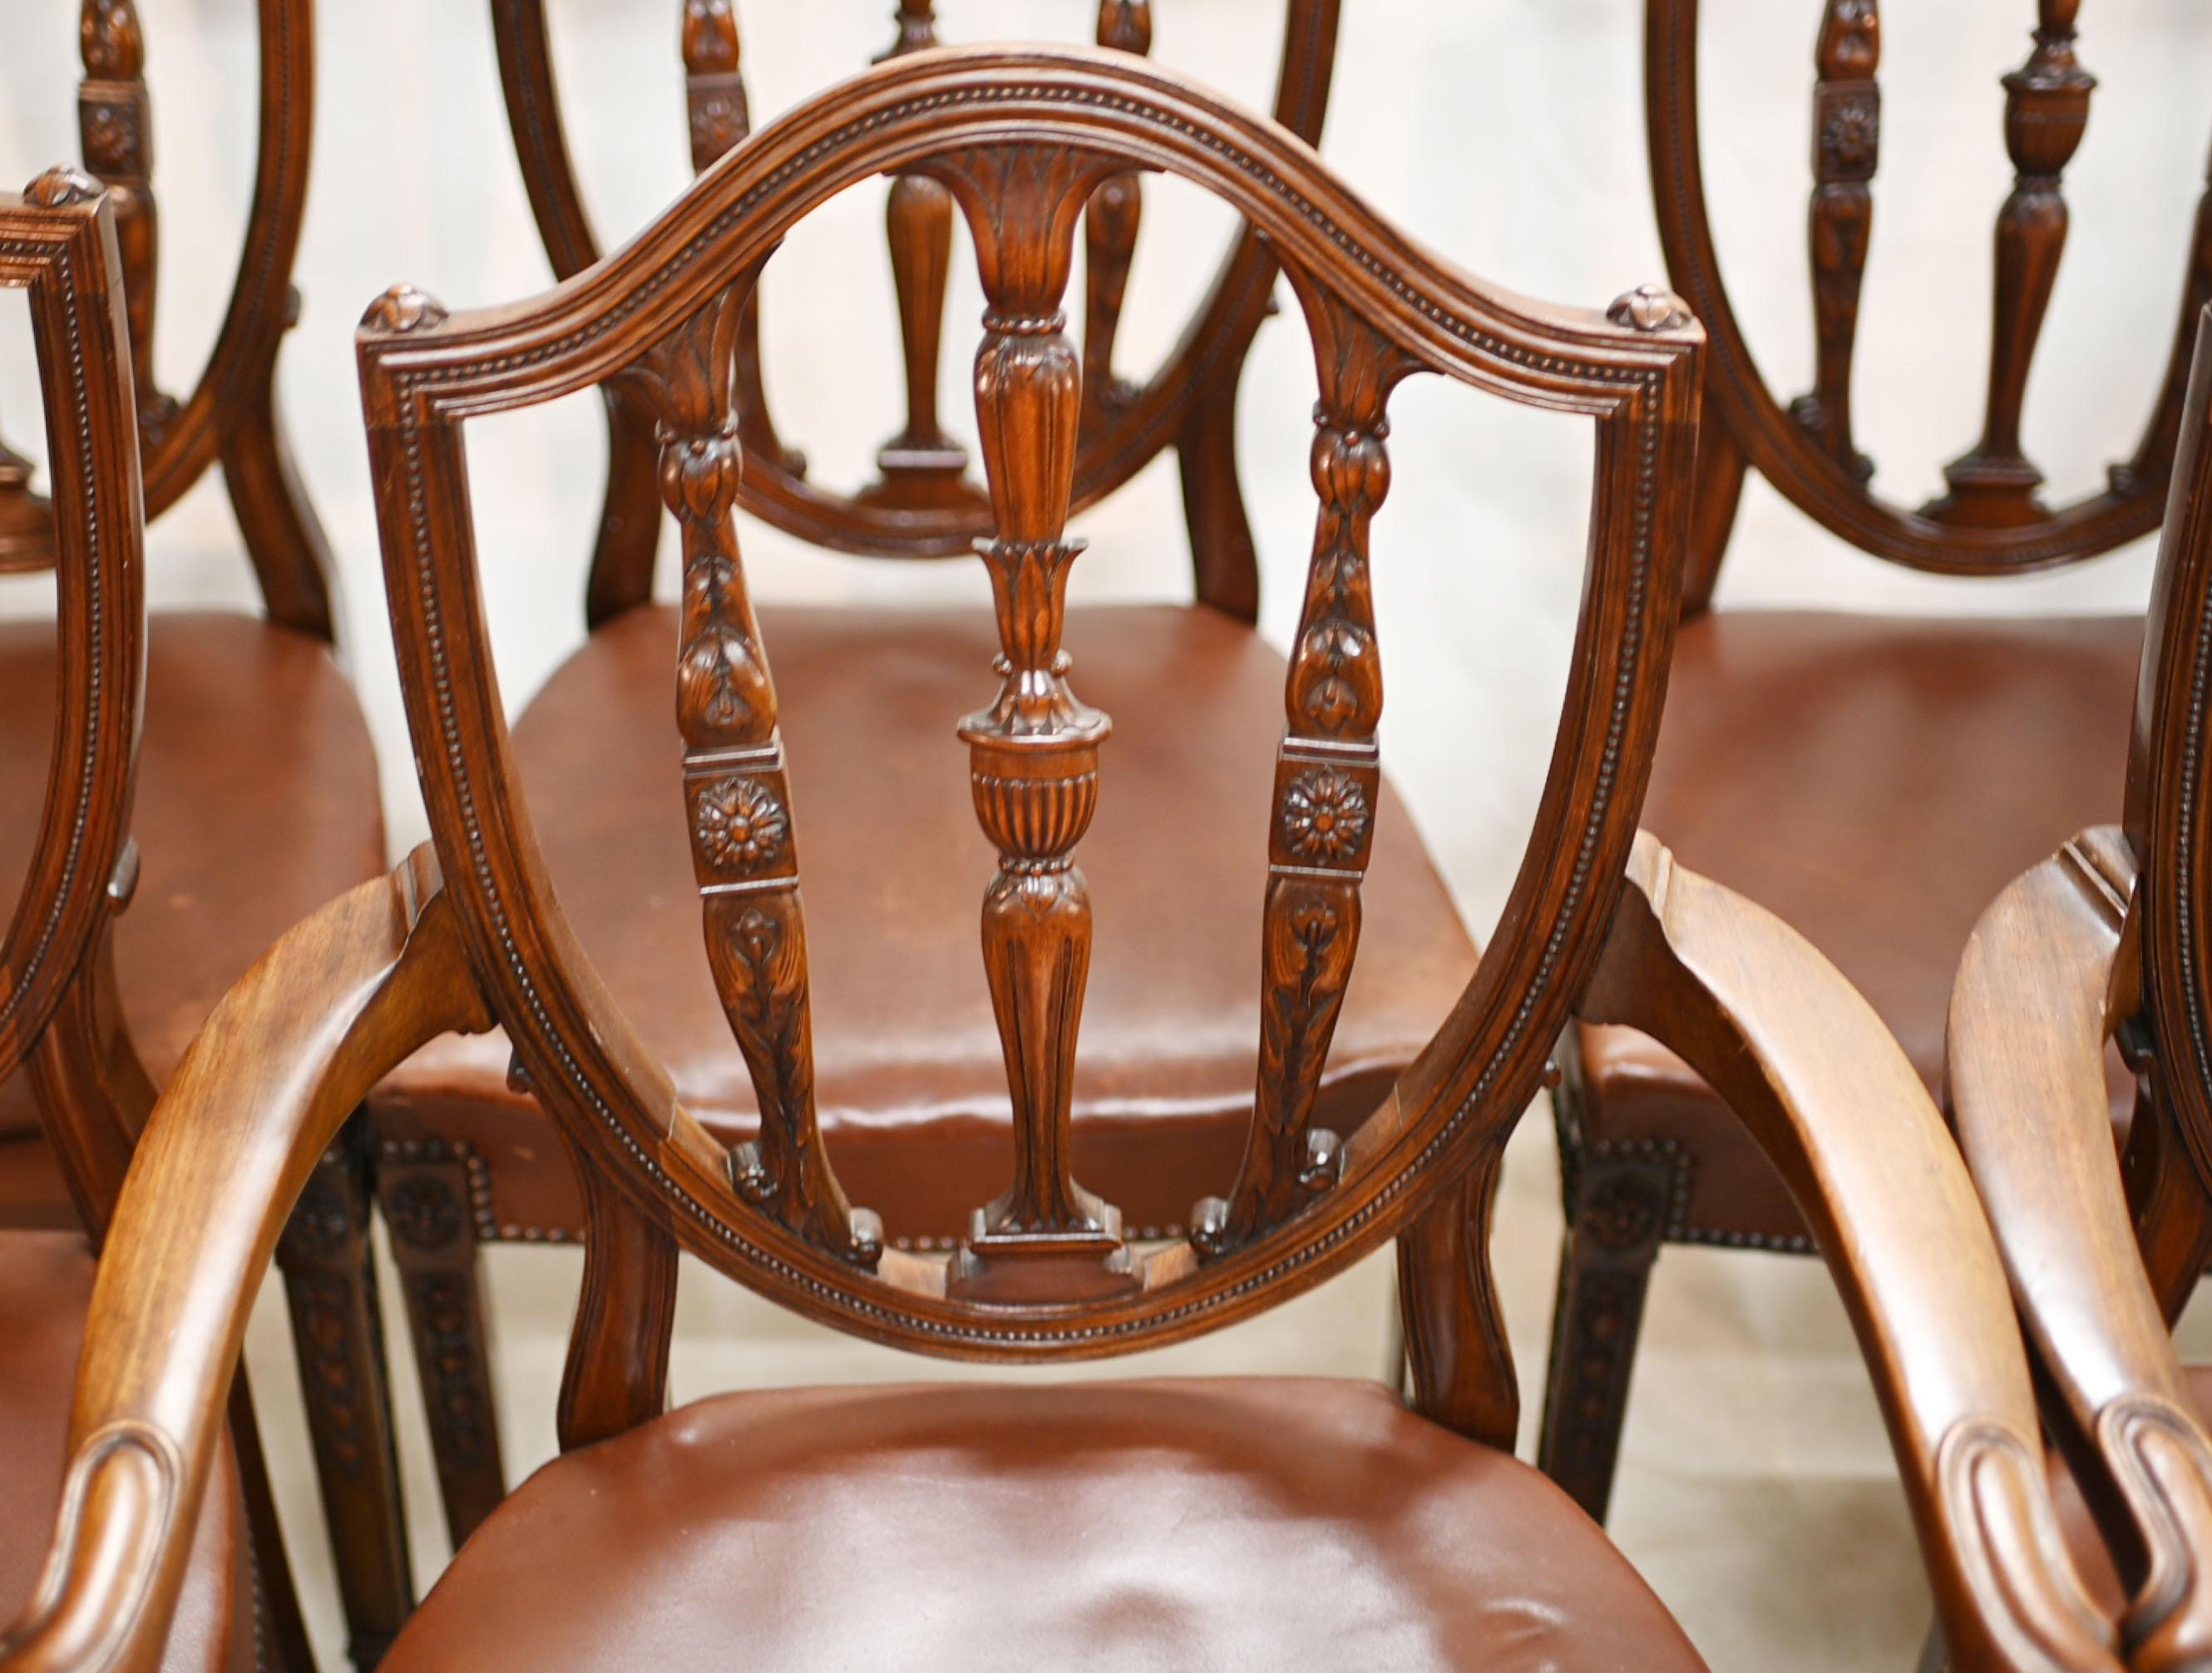 Elegantes und raffiniertes Set von 8 Esszimmerstühlen nach Hepplewhite
Klassische handgeschnitzte Rückenlehne mit Urnenmotiven und Rosetten
Satz von 8 Stühlen - einschließlich zwei Sesseln
Wir datieren diese Stühle auf ca. 1880
Angeboten in